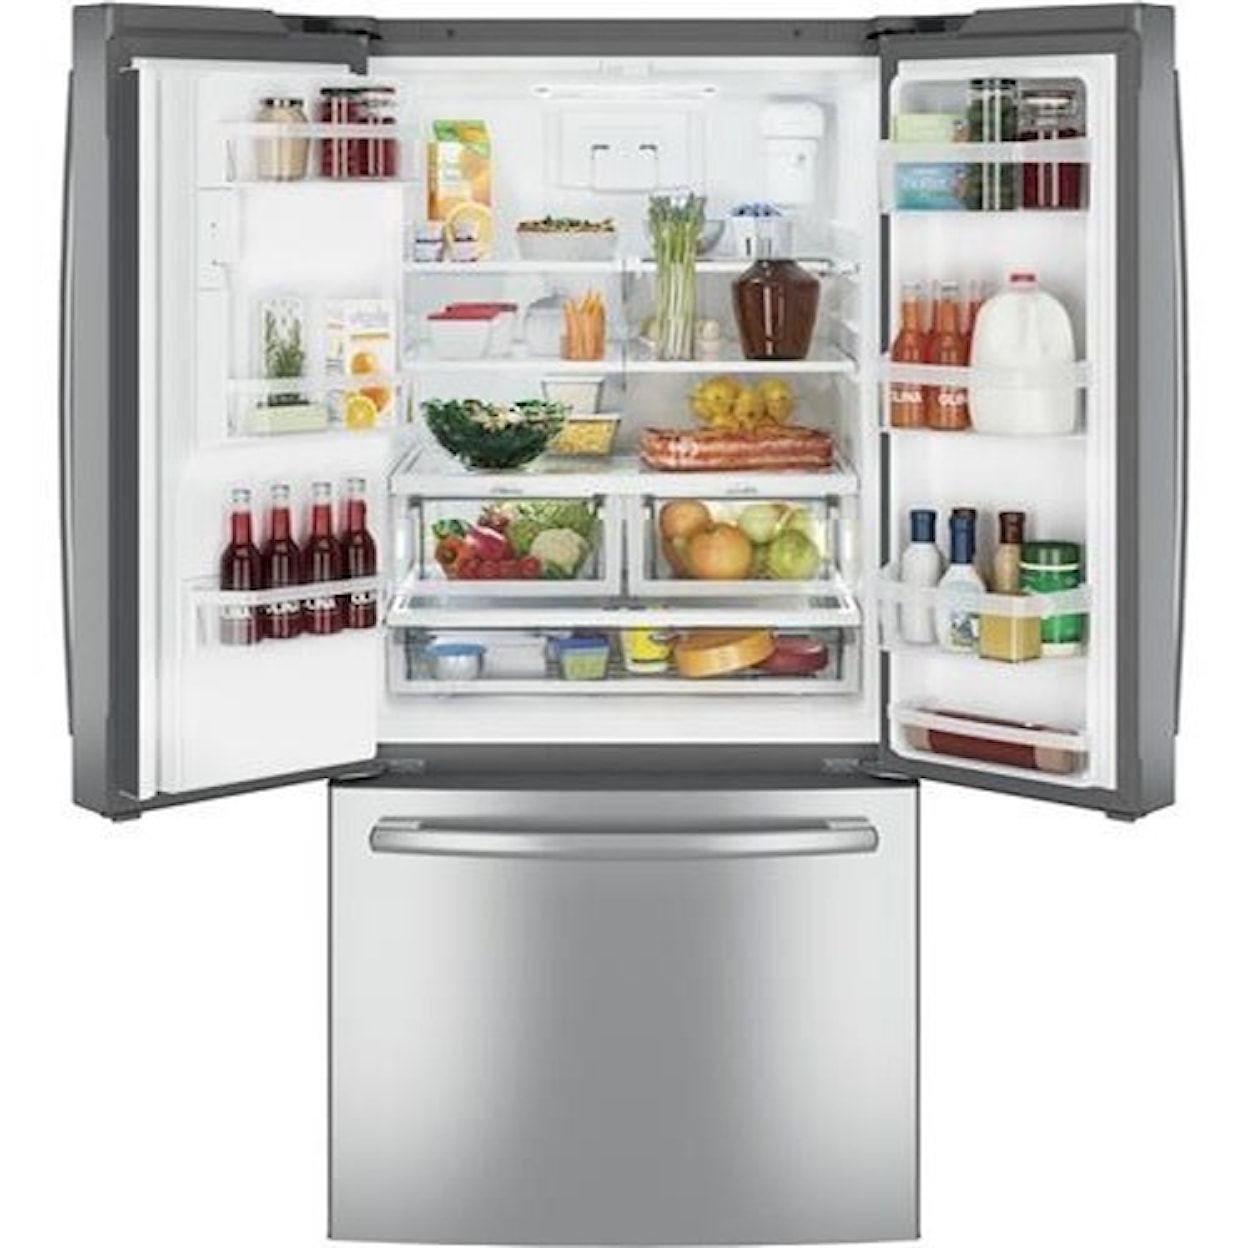 GE Appliances GE French Door Refrigerators 23.8 Cu. Ft. French-Door Refrigerator